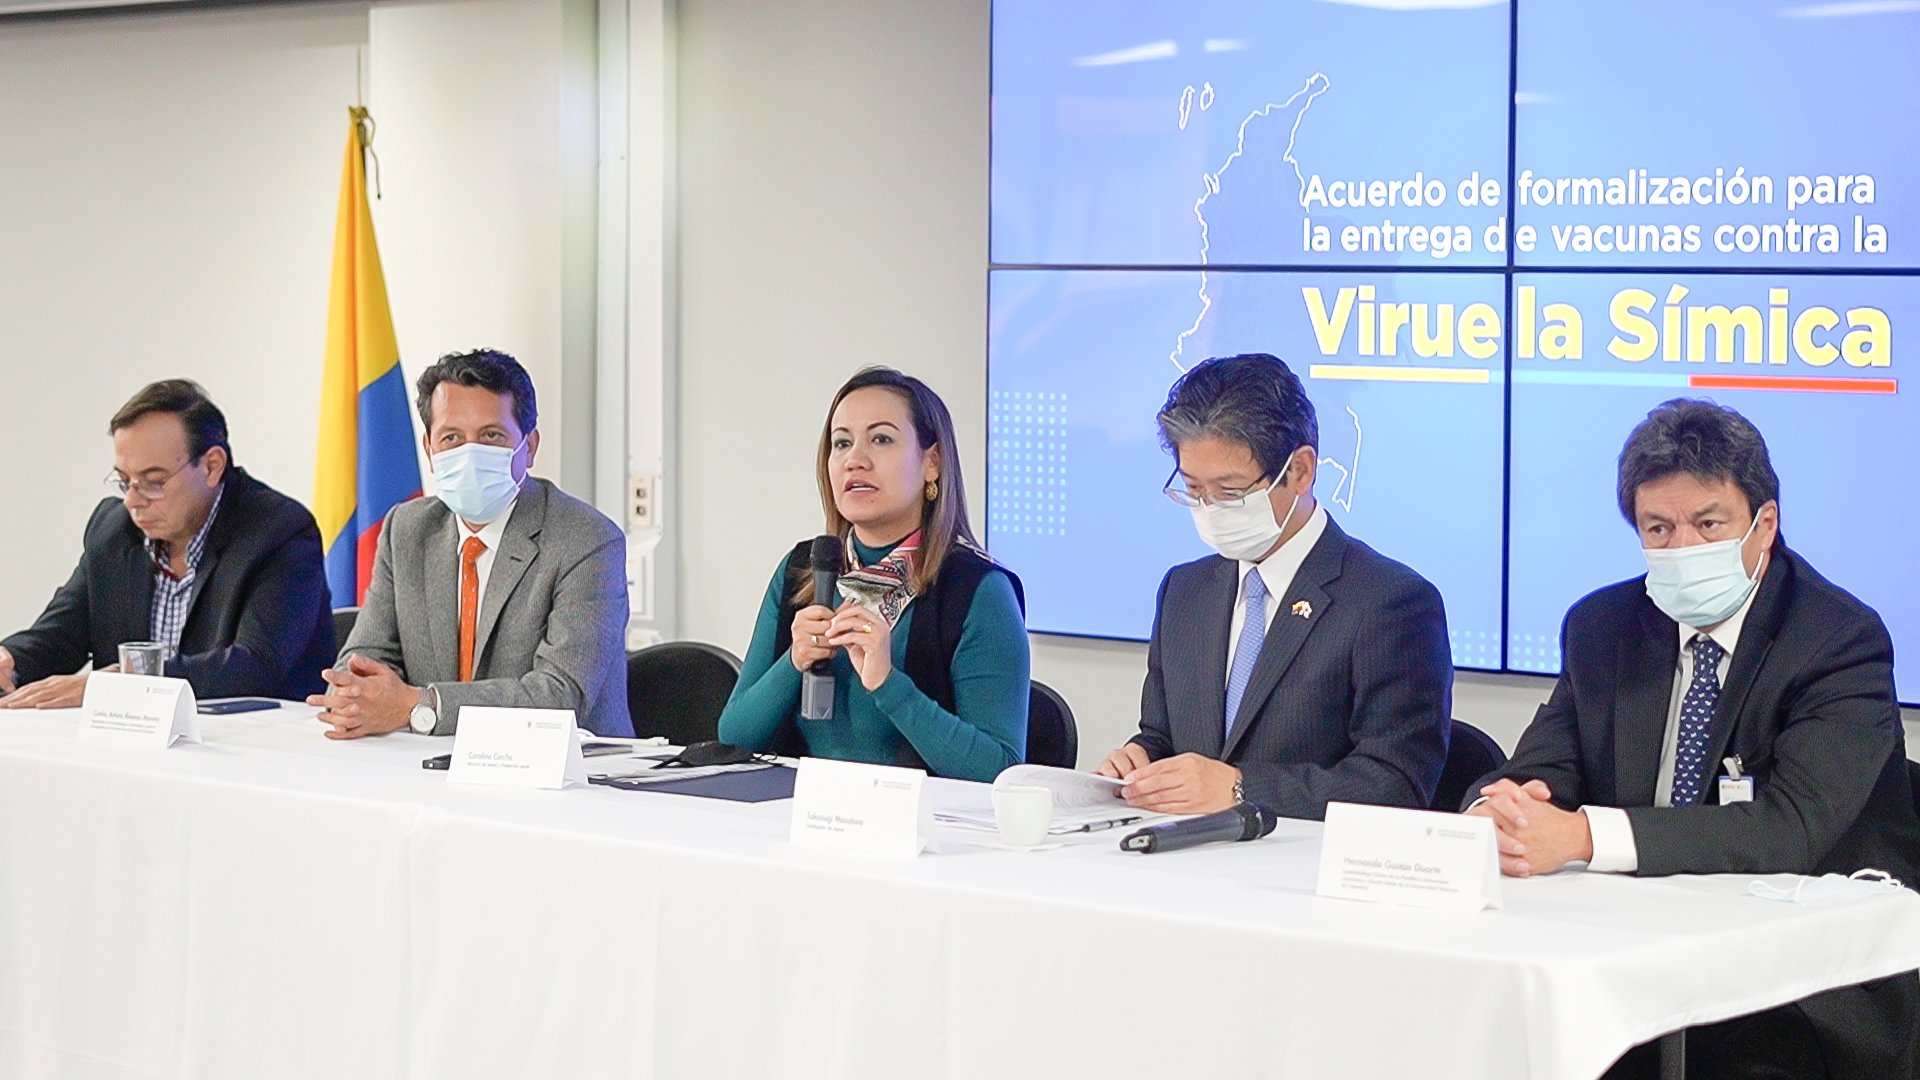 Intervención de la Ministra de Salud y Protección Social, Carolina Corcho en la suscripción del acuerdo con Japón para recibir vacunas contra la viruela símica.